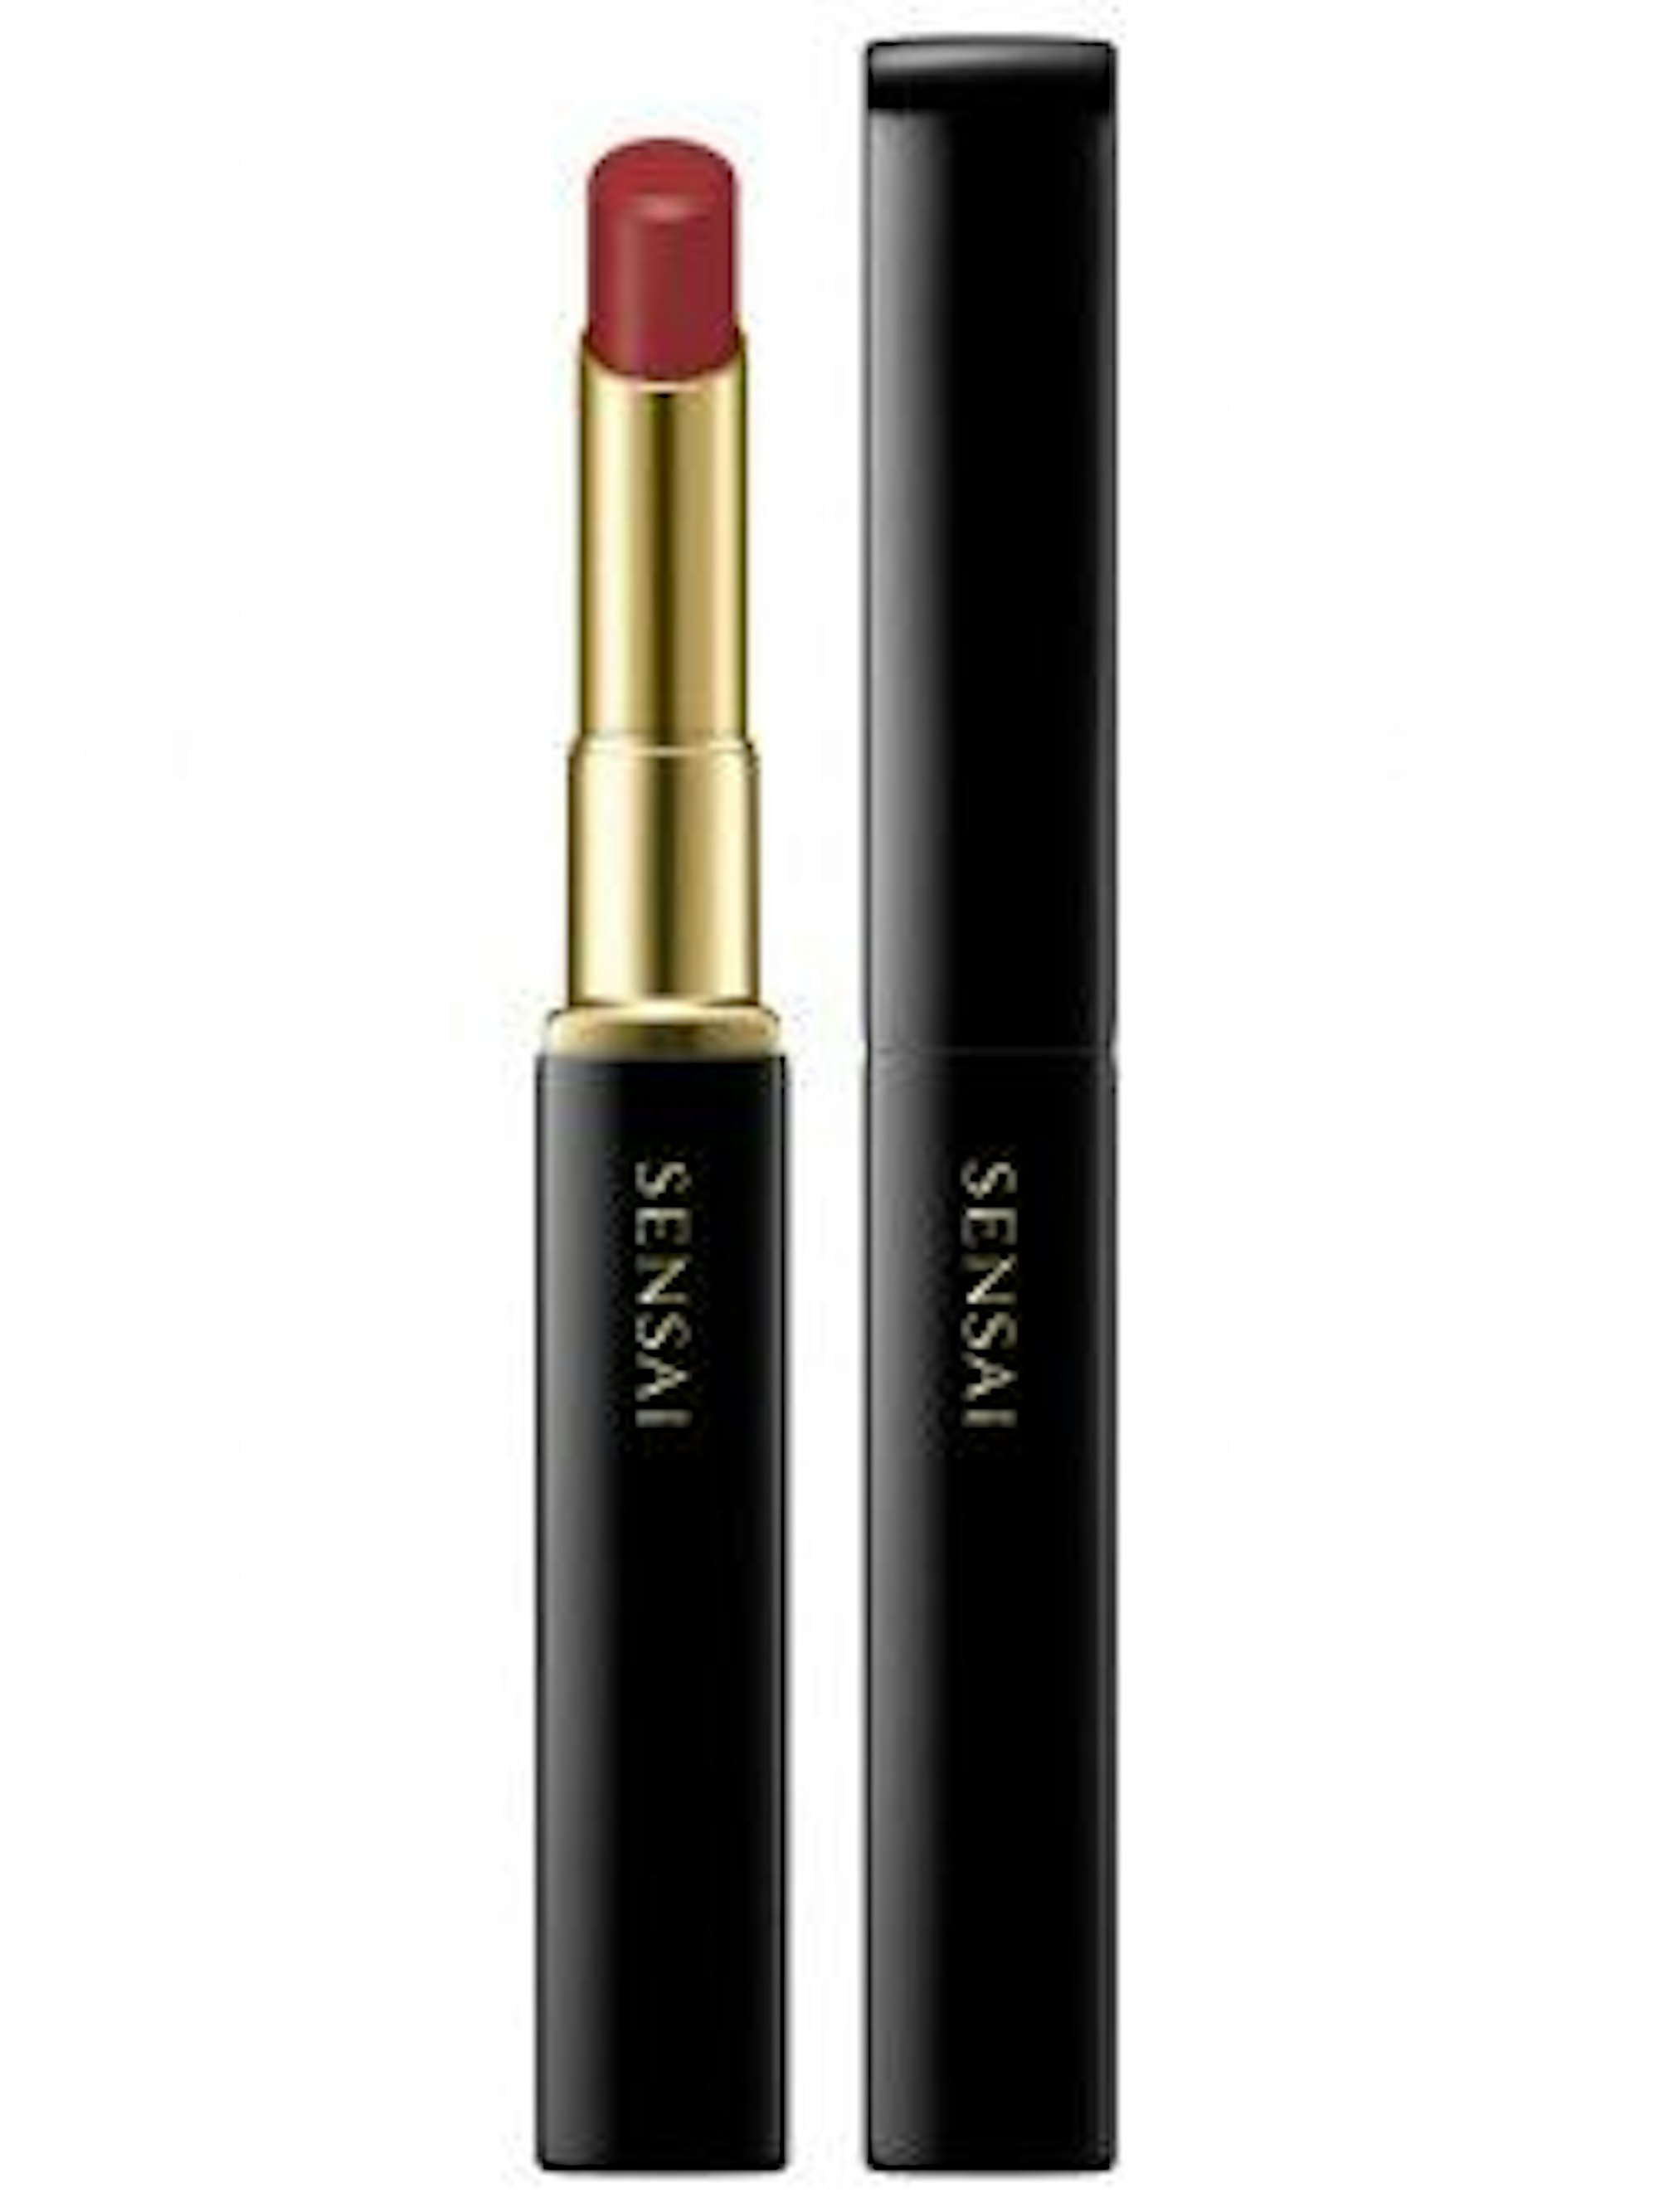 Der Sensai Contouring Lipstick vor weißem Hintergrund.